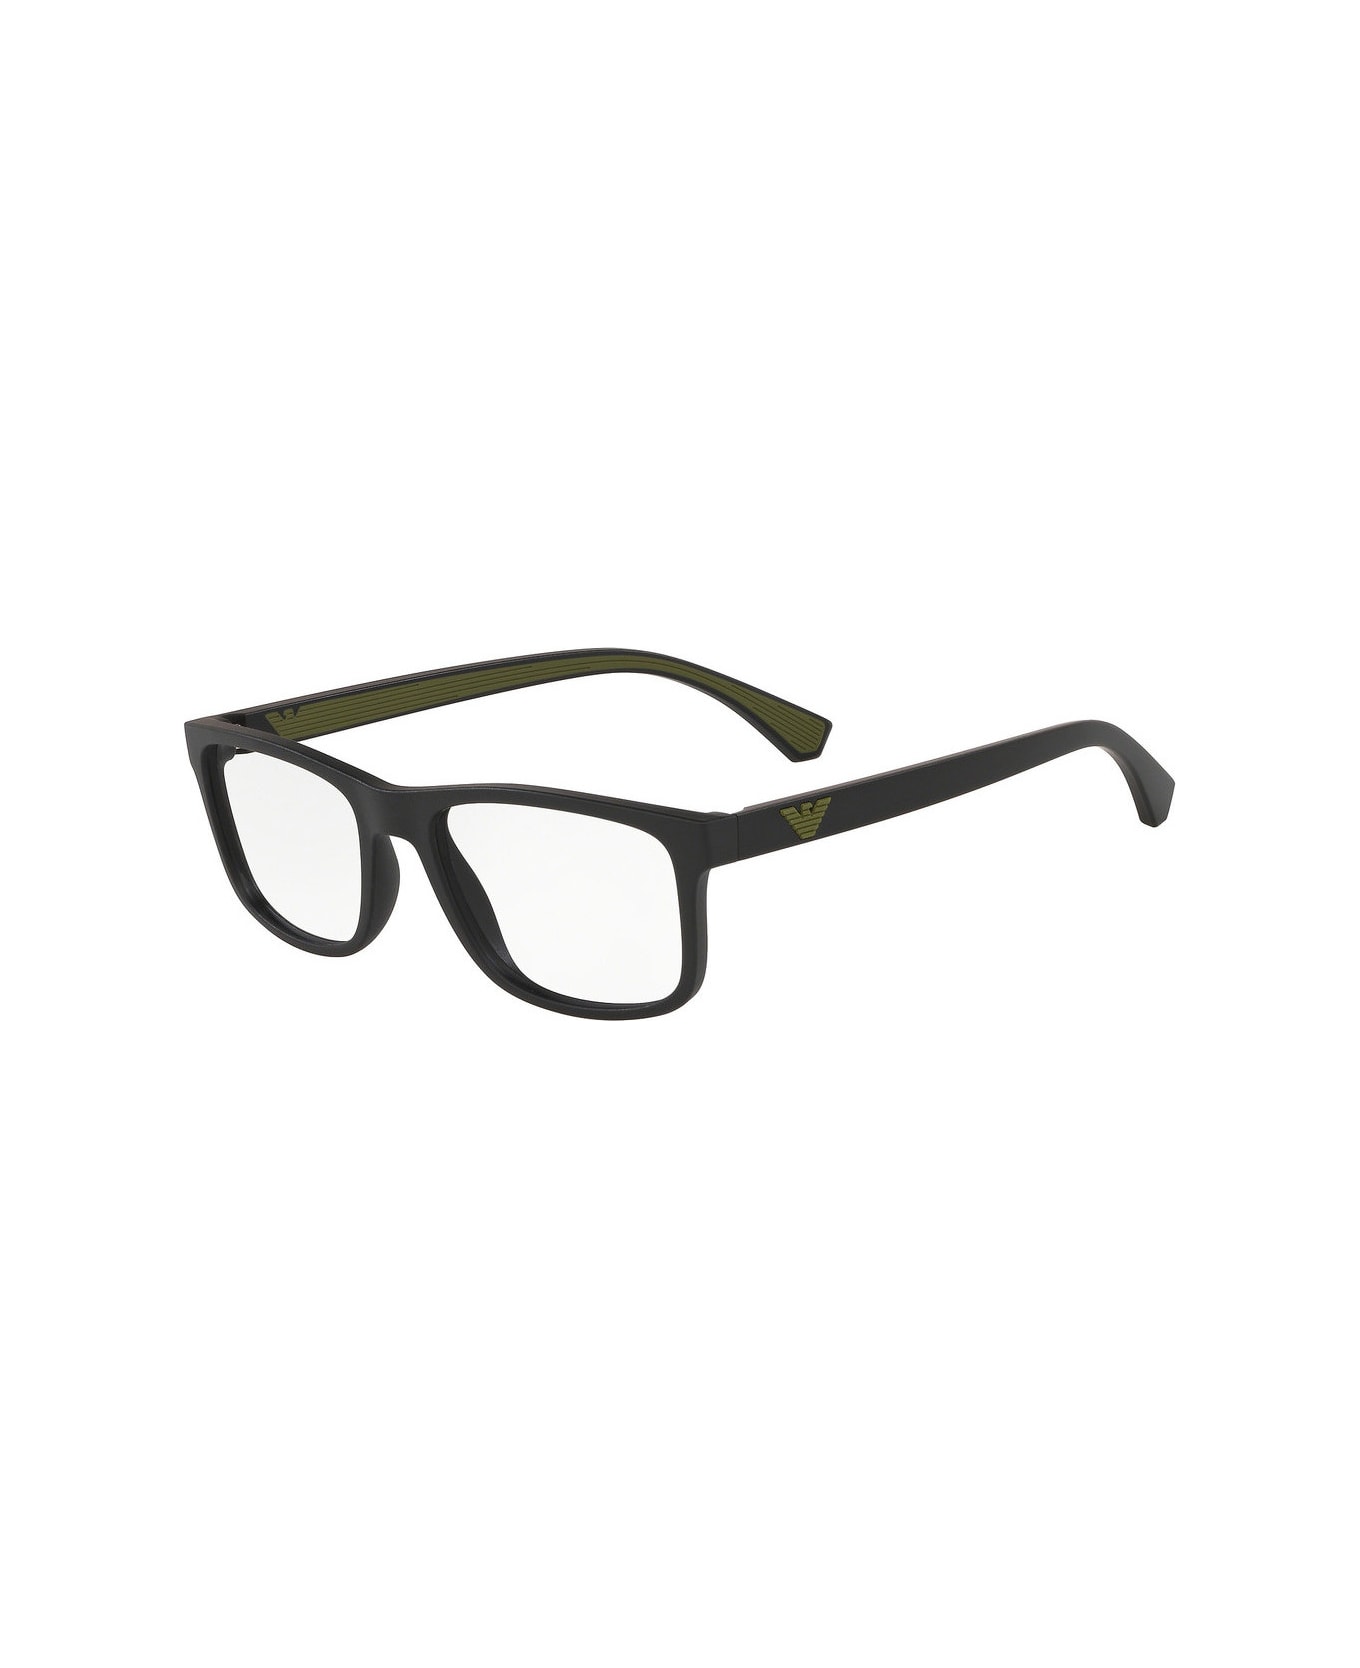 Emporio Armani EA3147 5042 Glasses